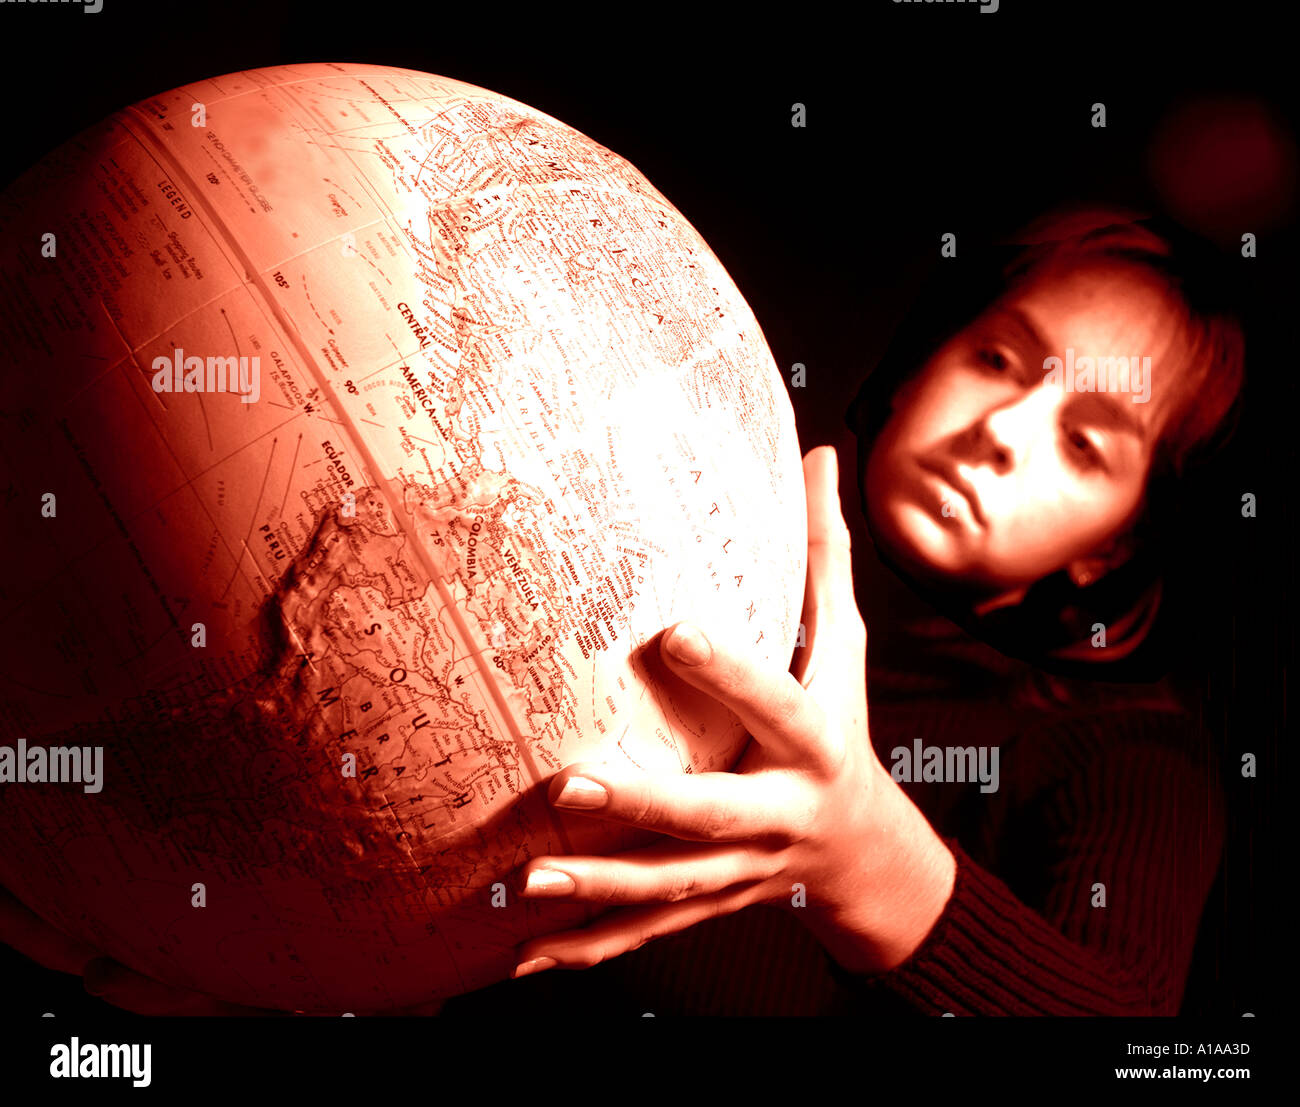 Horizontale Farbbild eines Mädchens hält eine Kugel oder ein Modell der Welt Stockfoto